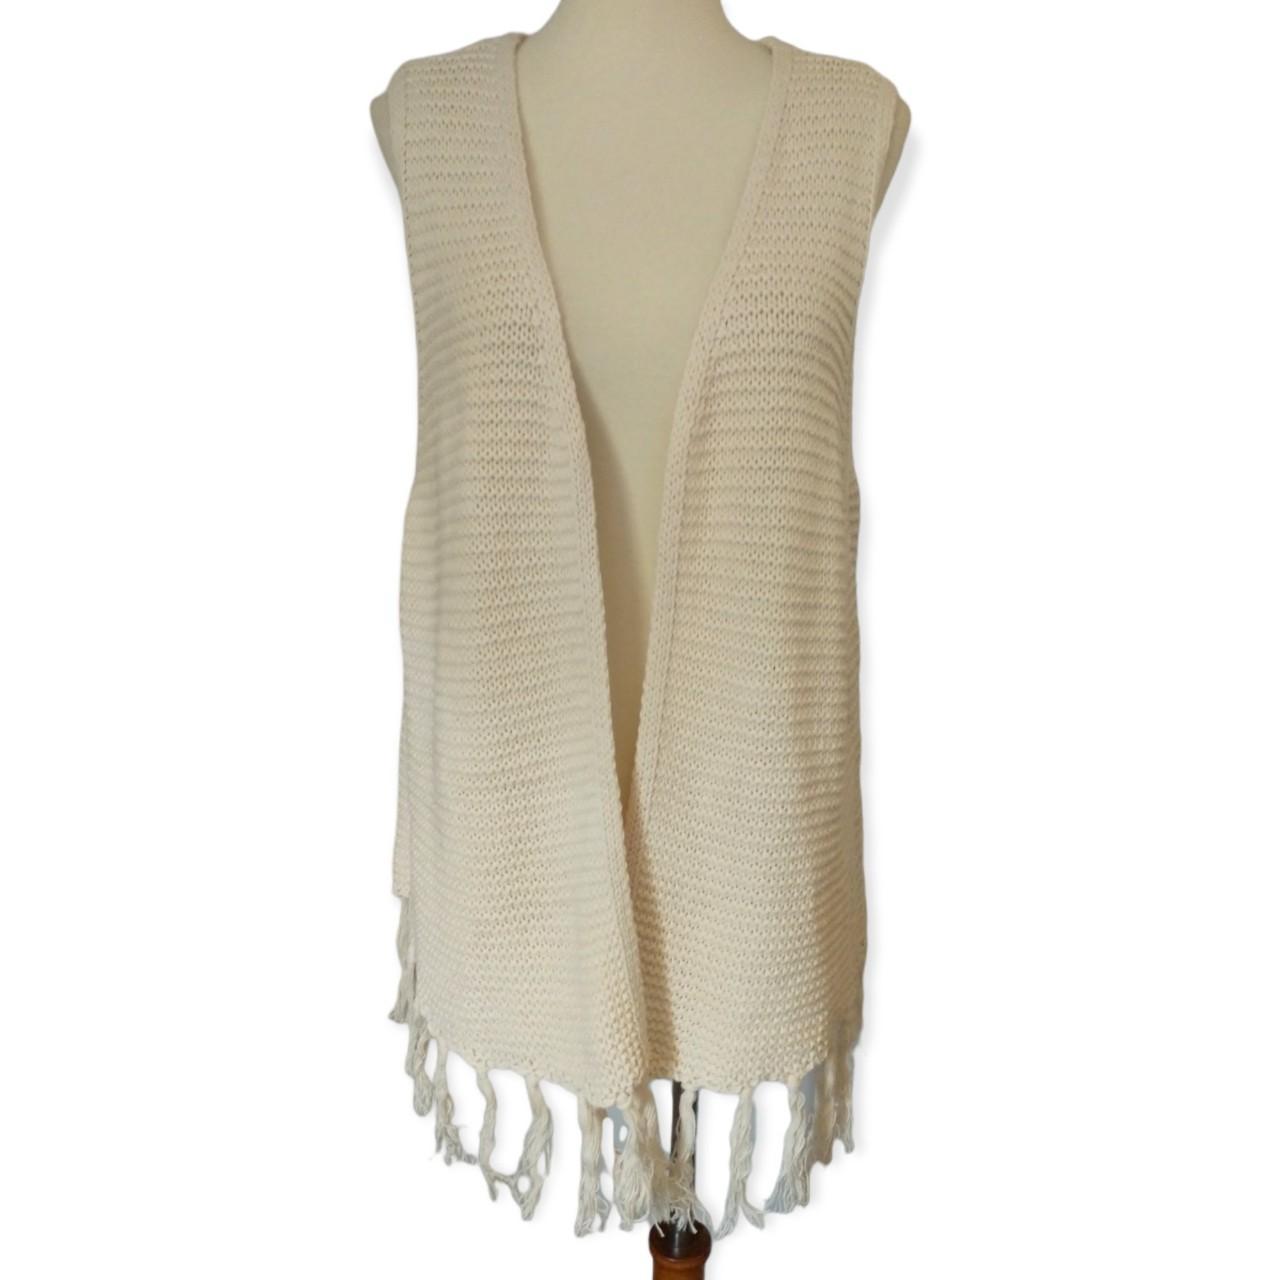 Product Image 1 - Boho Knit Fringed Vest L